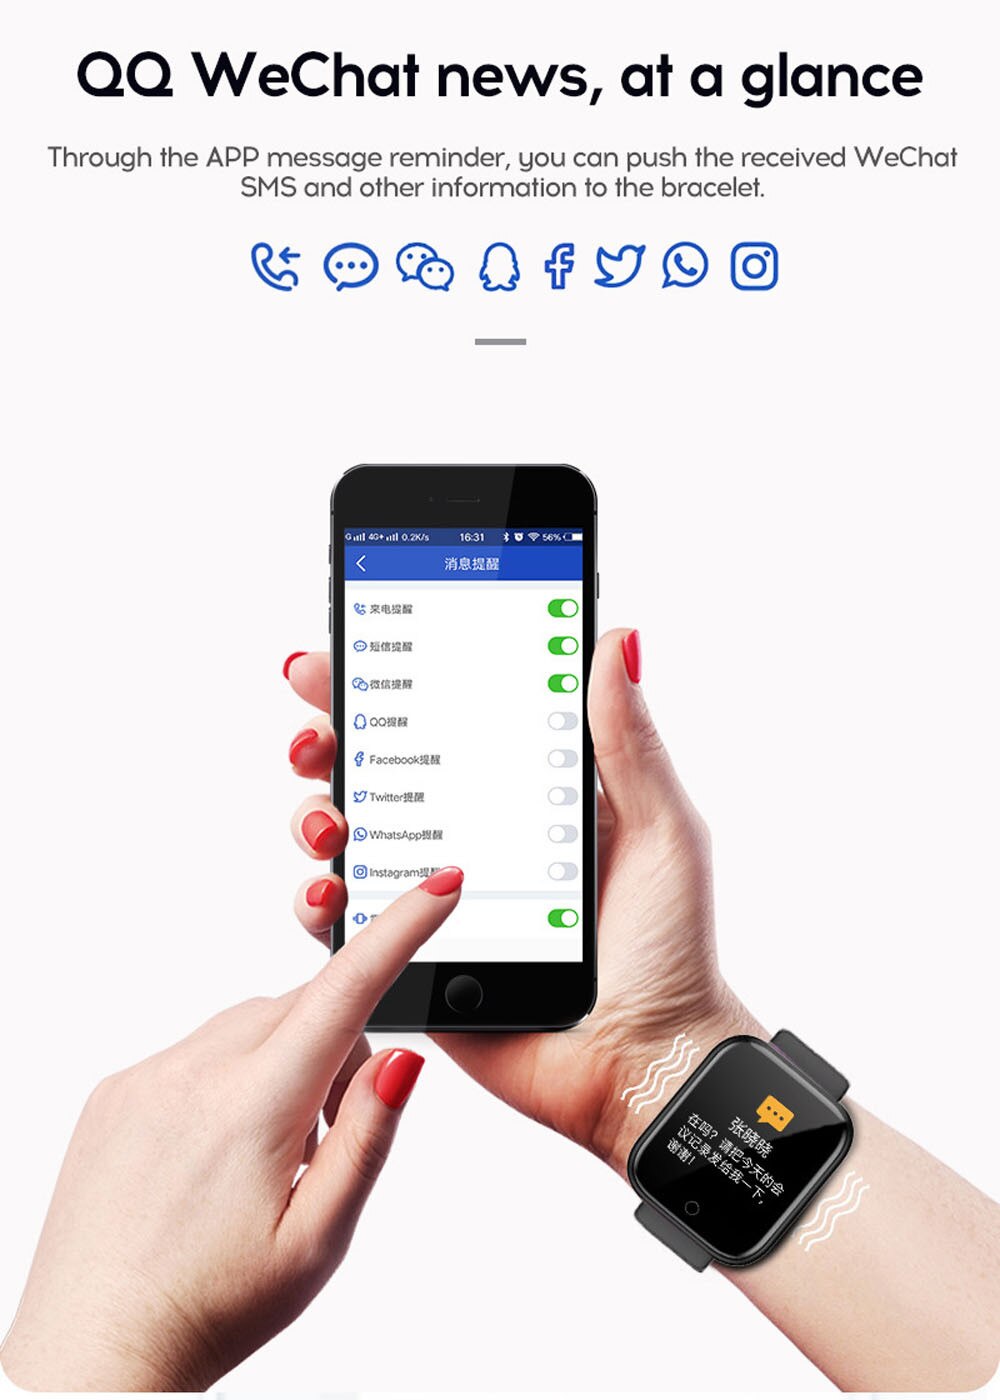 Roze Bluetooth Smart Horloge Smartwatch Vrouwen Fitness Monitor Armband Hartslag Bloeddruk Smart Horloge Voor Ios Android